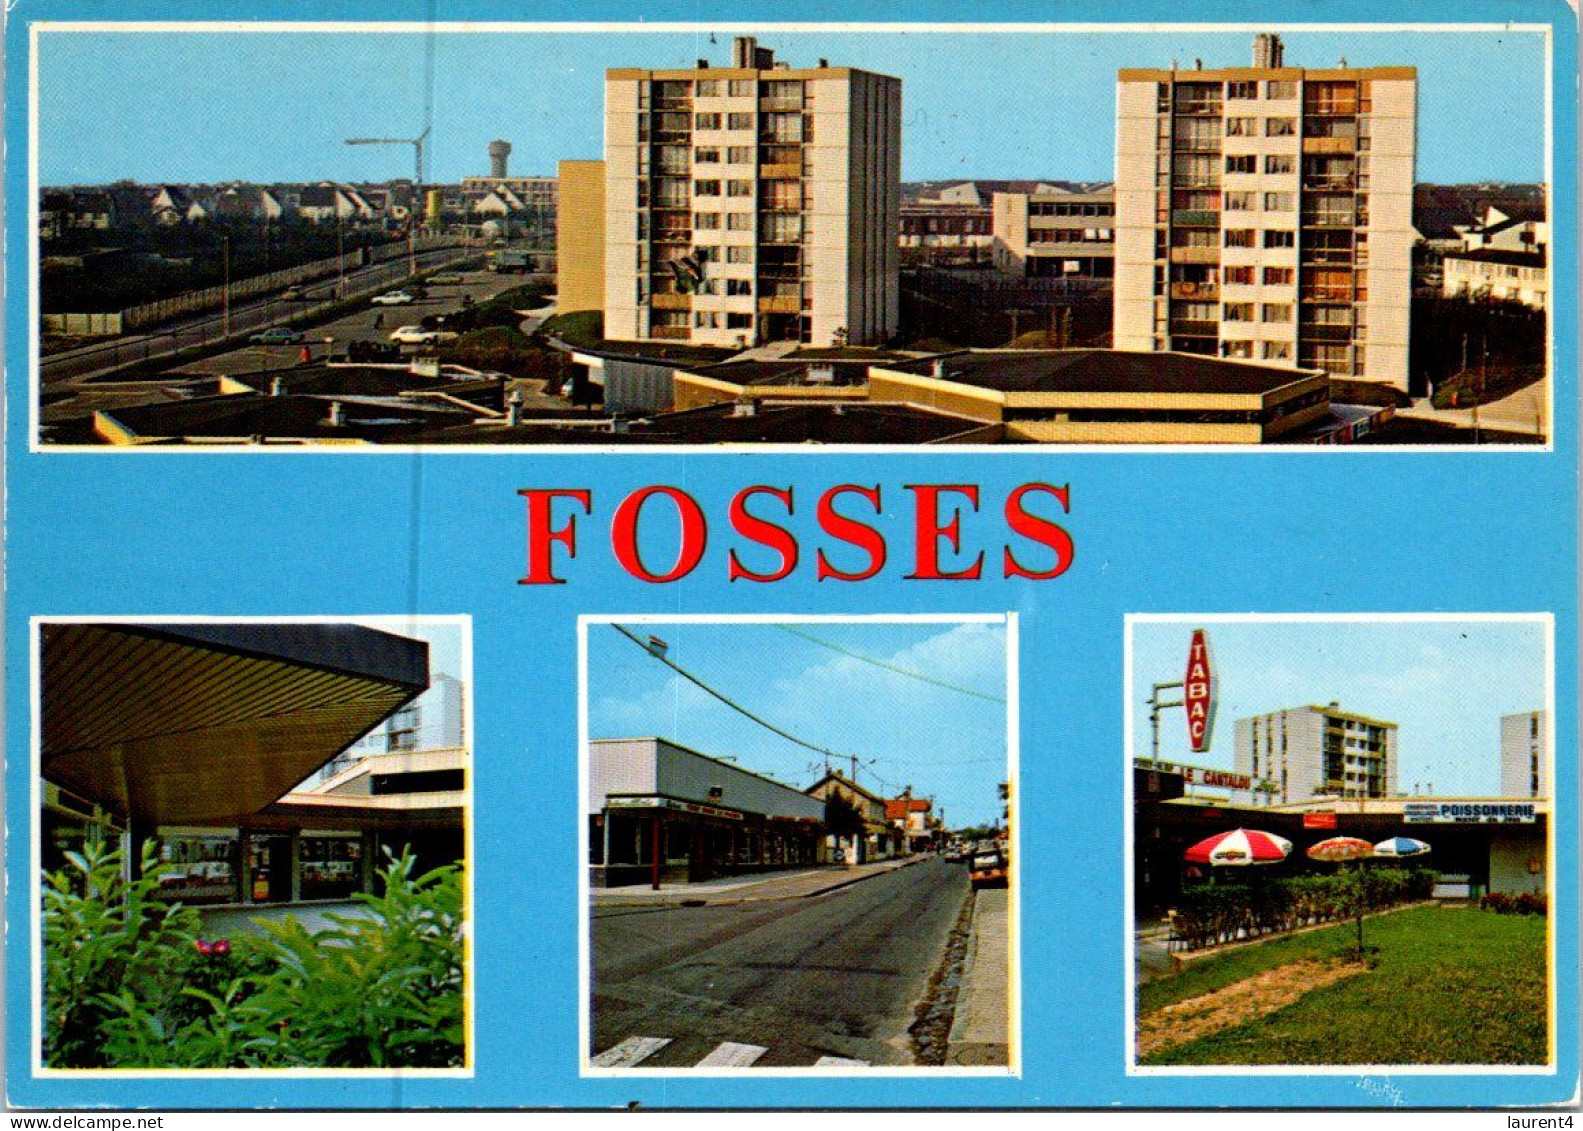 (2 P 50) France - Fosses Centre Commercial - Fosses